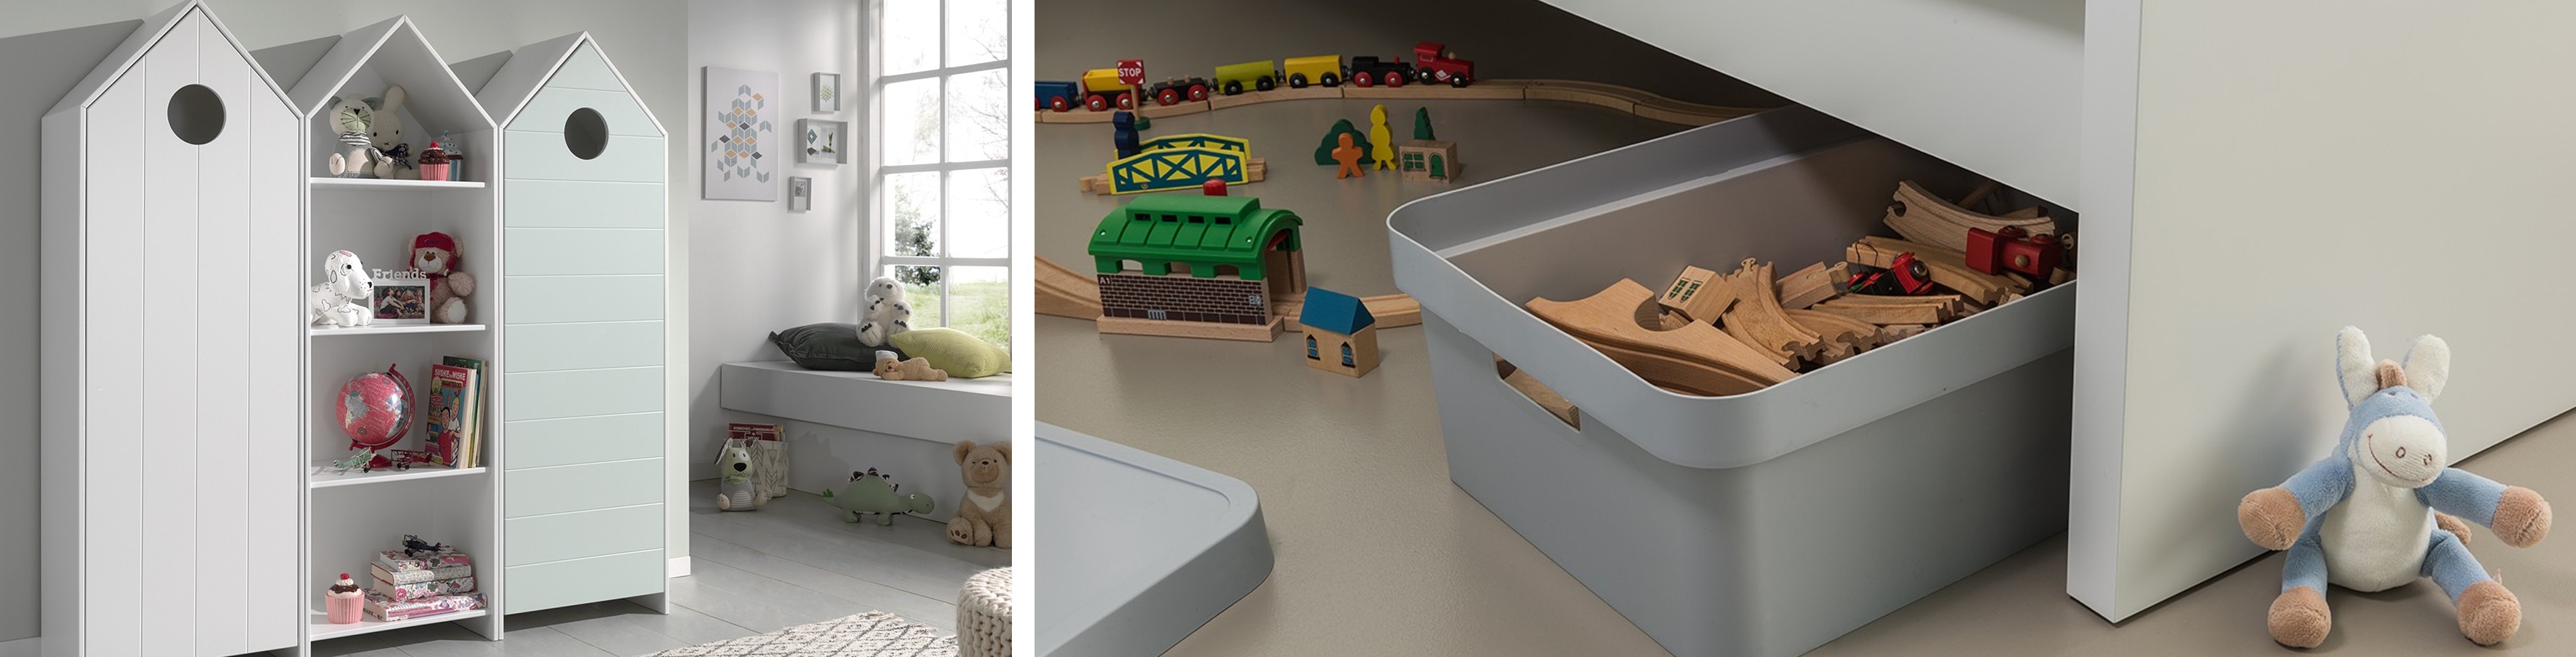 Schränke und Regal in Hausform, Spielsachen und Kuscheltiere, Holzeisenbahn, Box unter dem Bett, Kuschel-Esel